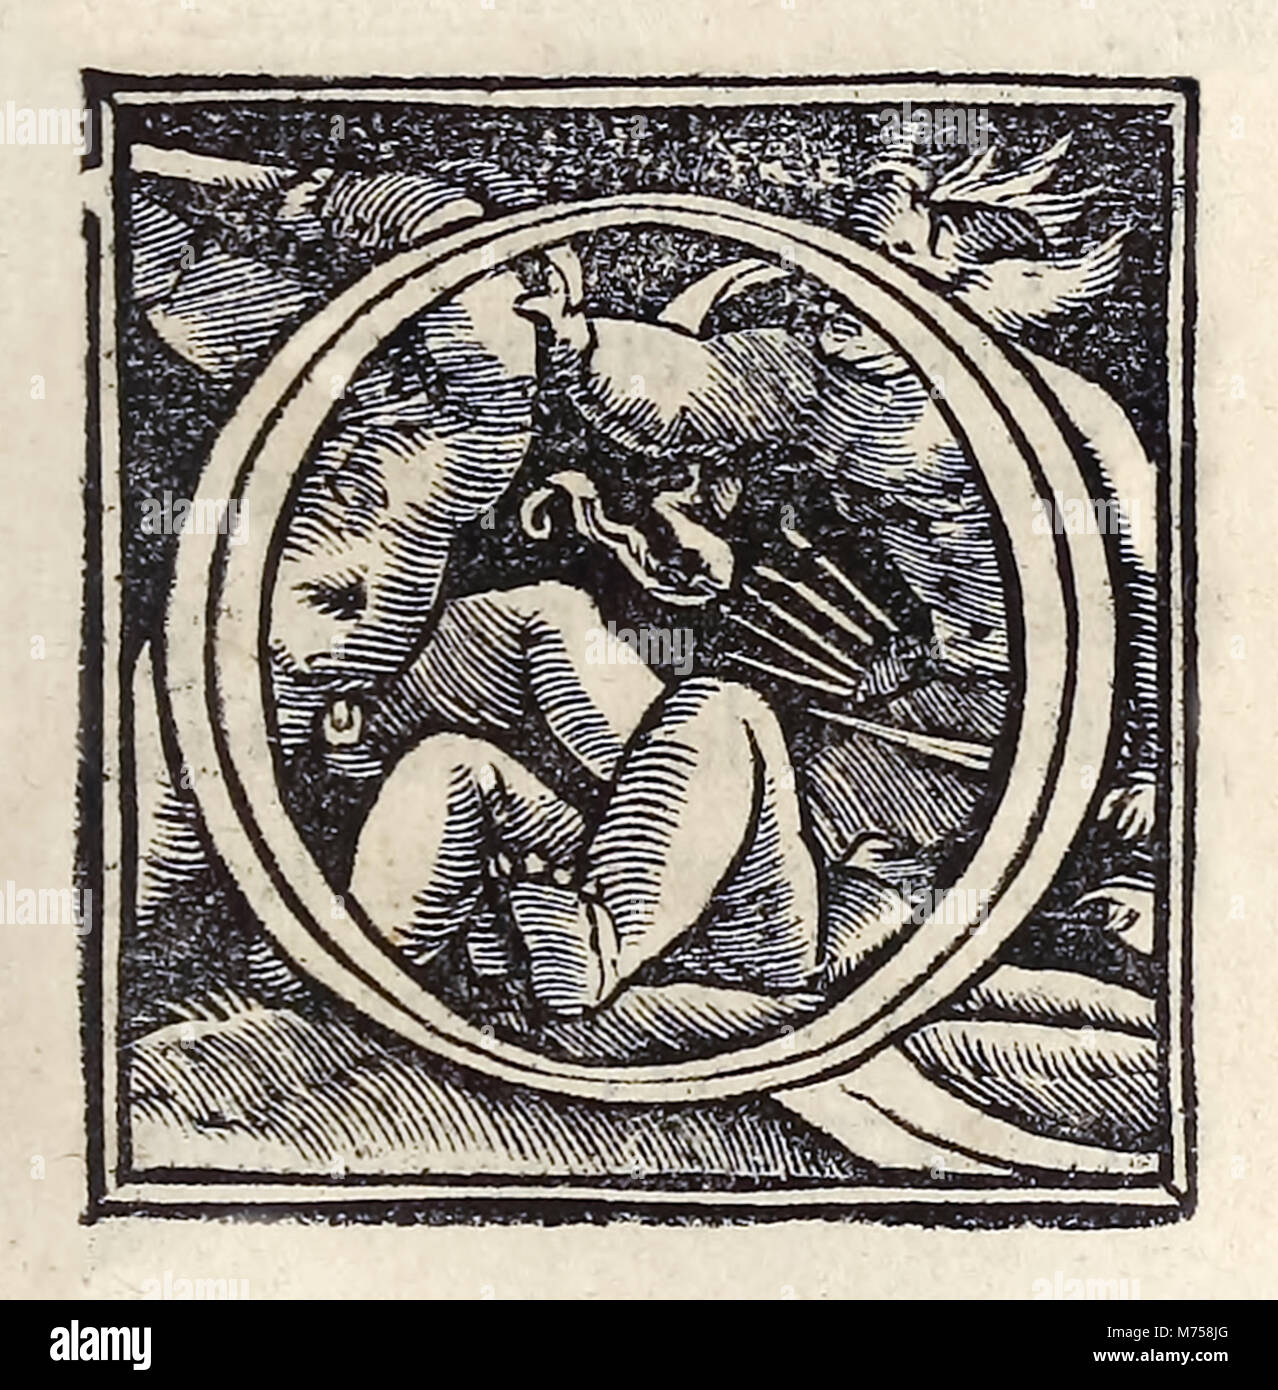 Beleuchtete "O" aus dem Jahre 1518 Basel dritte Ausgabe von "Utopia" von Thomas Morus (1478-1535) erstmals im Jahr 1516 veröffentlicht. Holzschnitt von Hans Holbein der Jüngere (1497-1543), die Putti kämpfen. Weitere Informationen finden Sie unten. Stockfoto